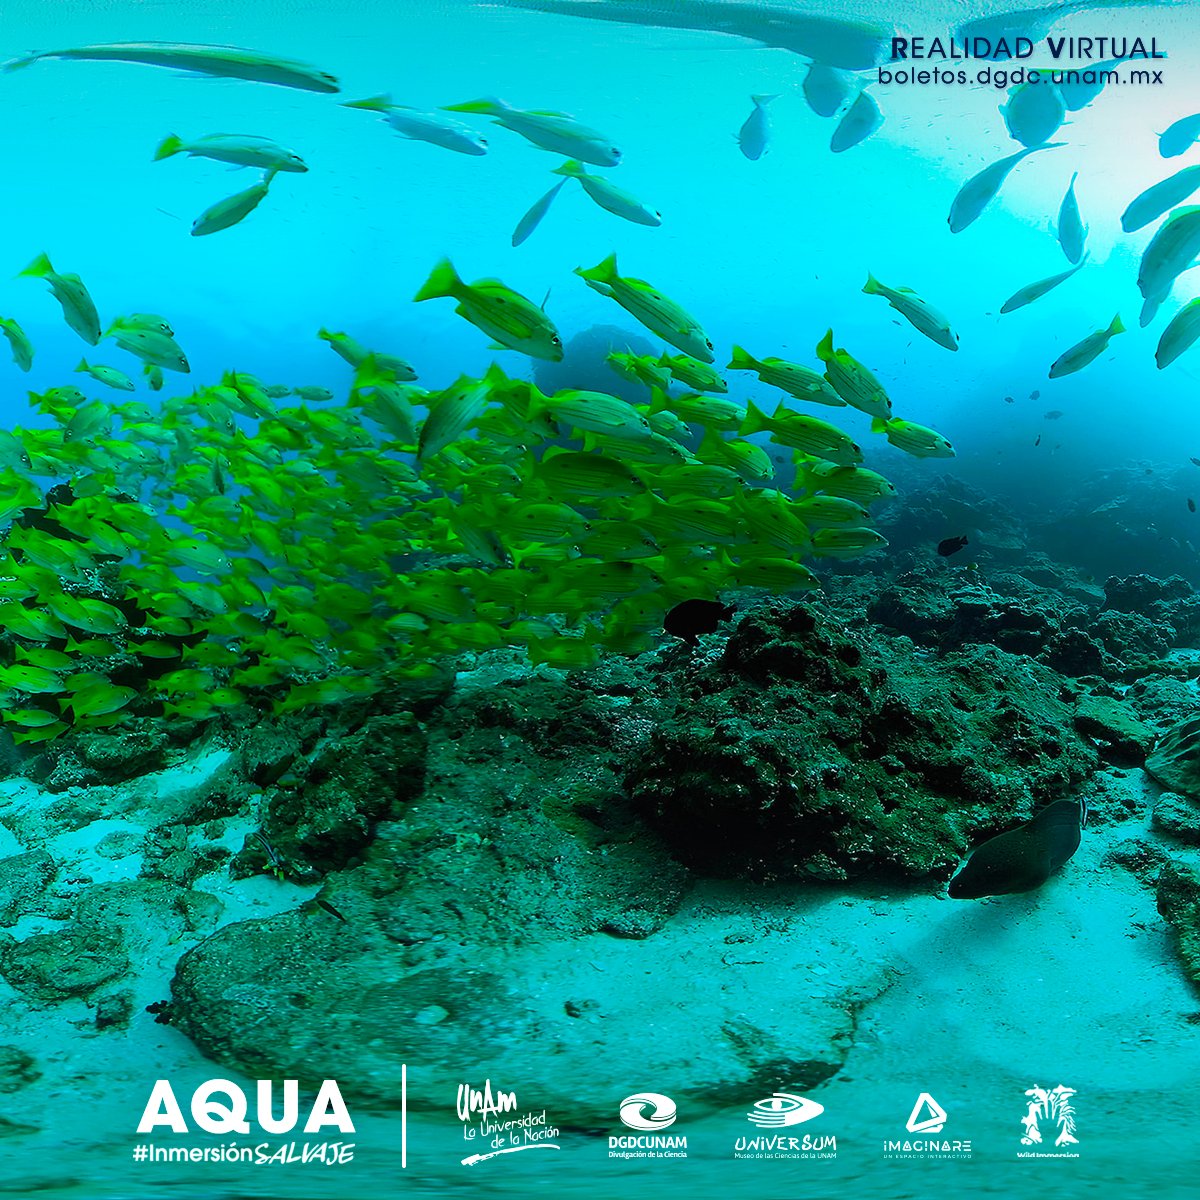 ¡Vive una experiencia inolvidable! 😎👏💙

En un ambiente inmersivo admirarás ecosistemas acuáticos a través de la realidad virtual. ¡En esta experiencia podrás explorar las riquezas de la vida marina!👇
bit.ly/3TZqtOT

#InmersiónSalvaje #ViveTuMuseo